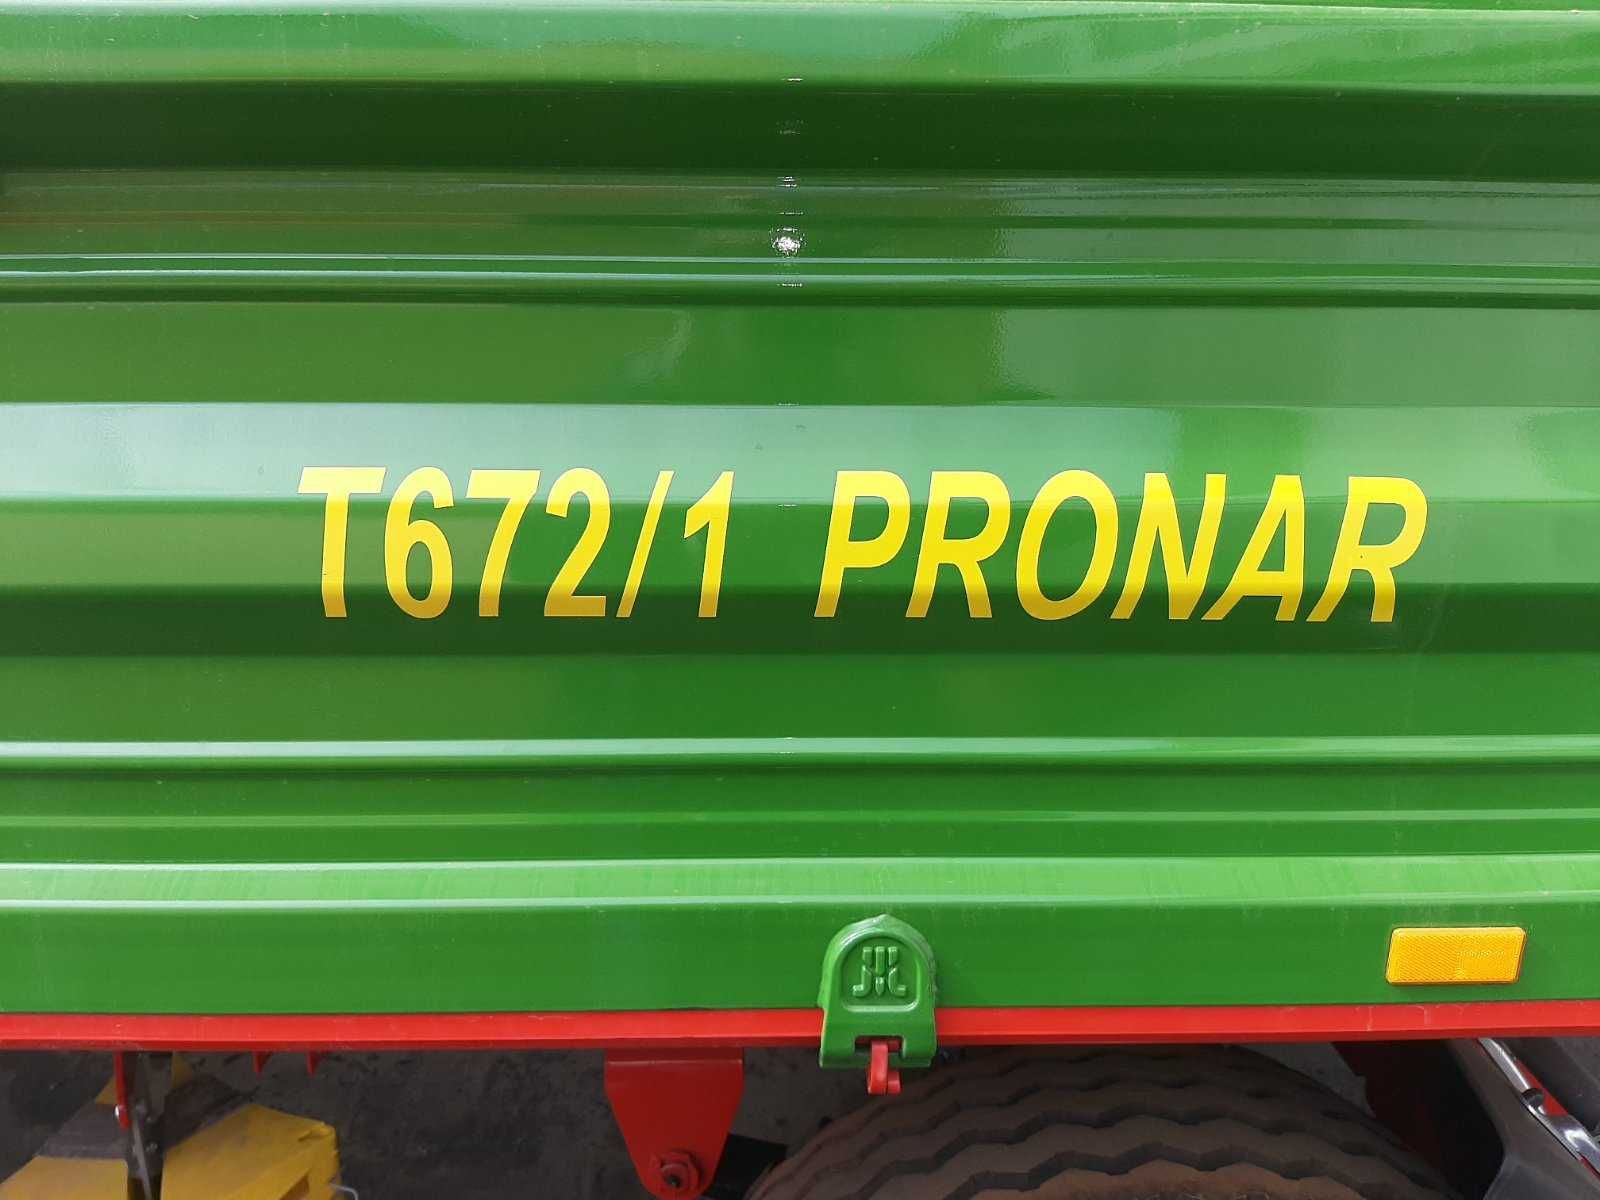 Прицеп причіп тракторний Pronar T672/1 (10 т) вироб. 2021 рік новий